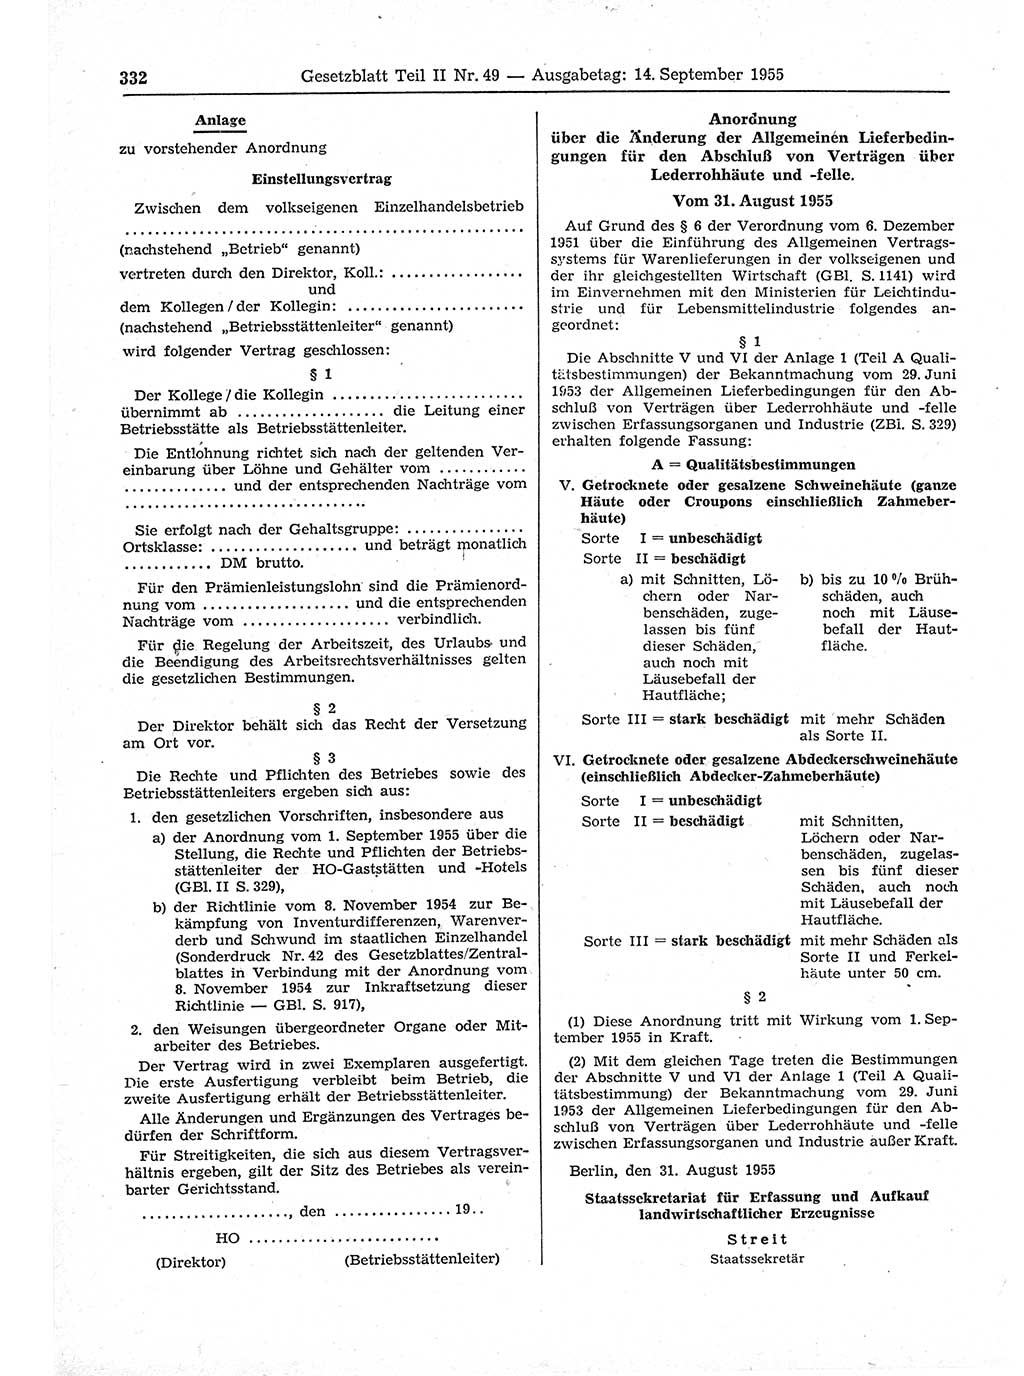 Gesetzblatt (GBl.) der Deutschen Demokratischen Republik (DDR) Teil ⅠⅠ 1955, Seite 332 (GBl. DDR ⅠⅠ 1955, S. 332)